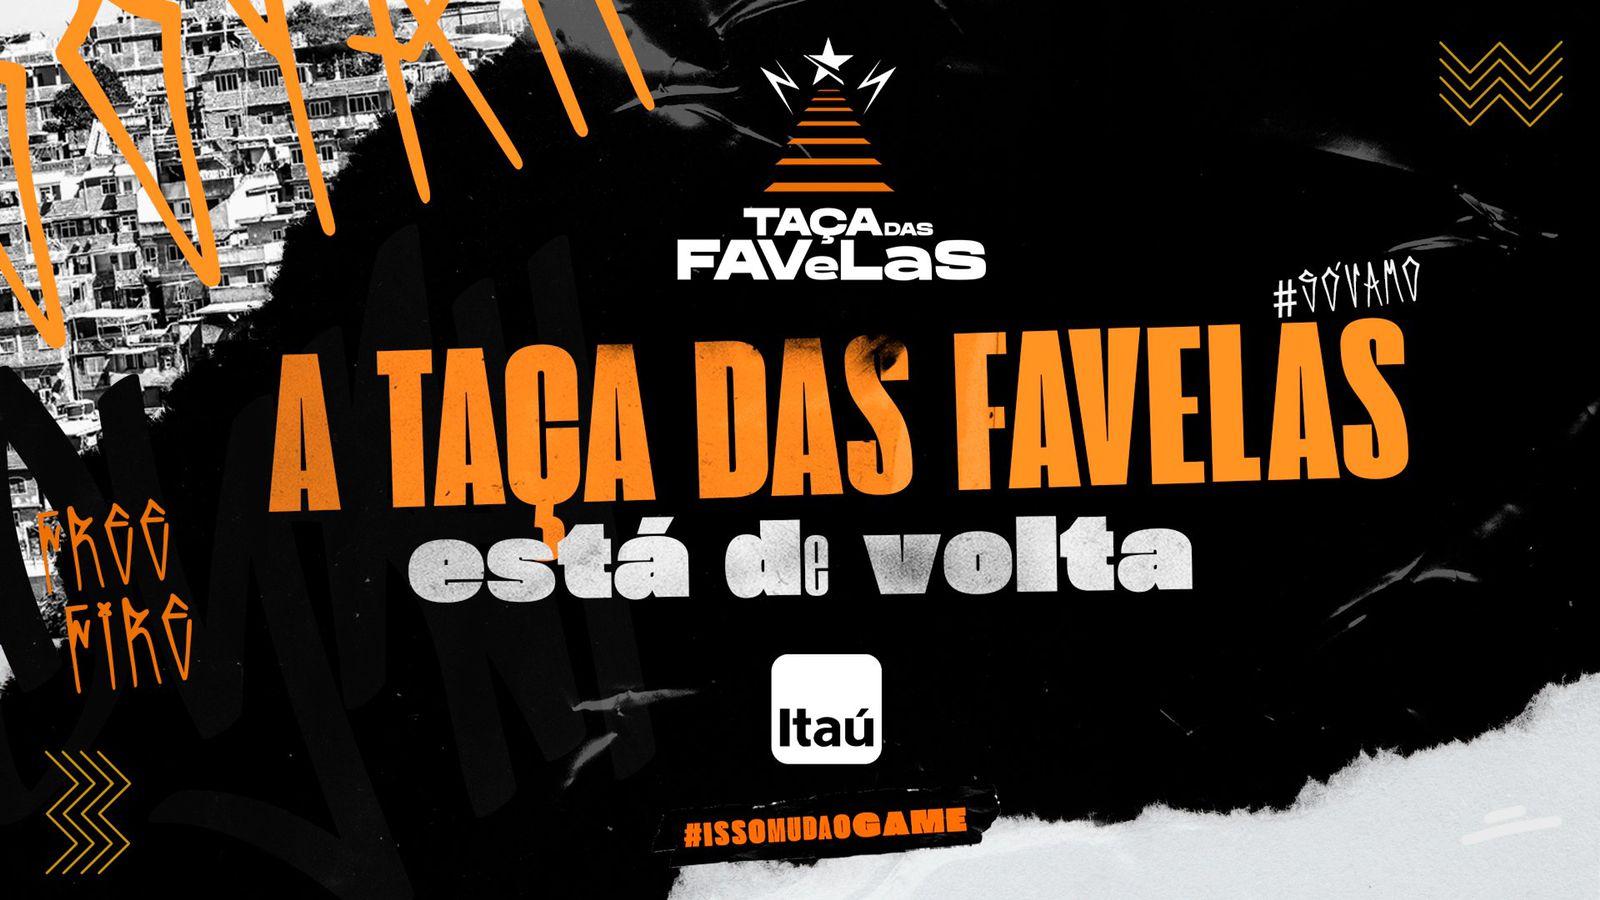 Taças das Favelas Free Fire edição 2021 retorna com apoio da LOUD e Itaú 